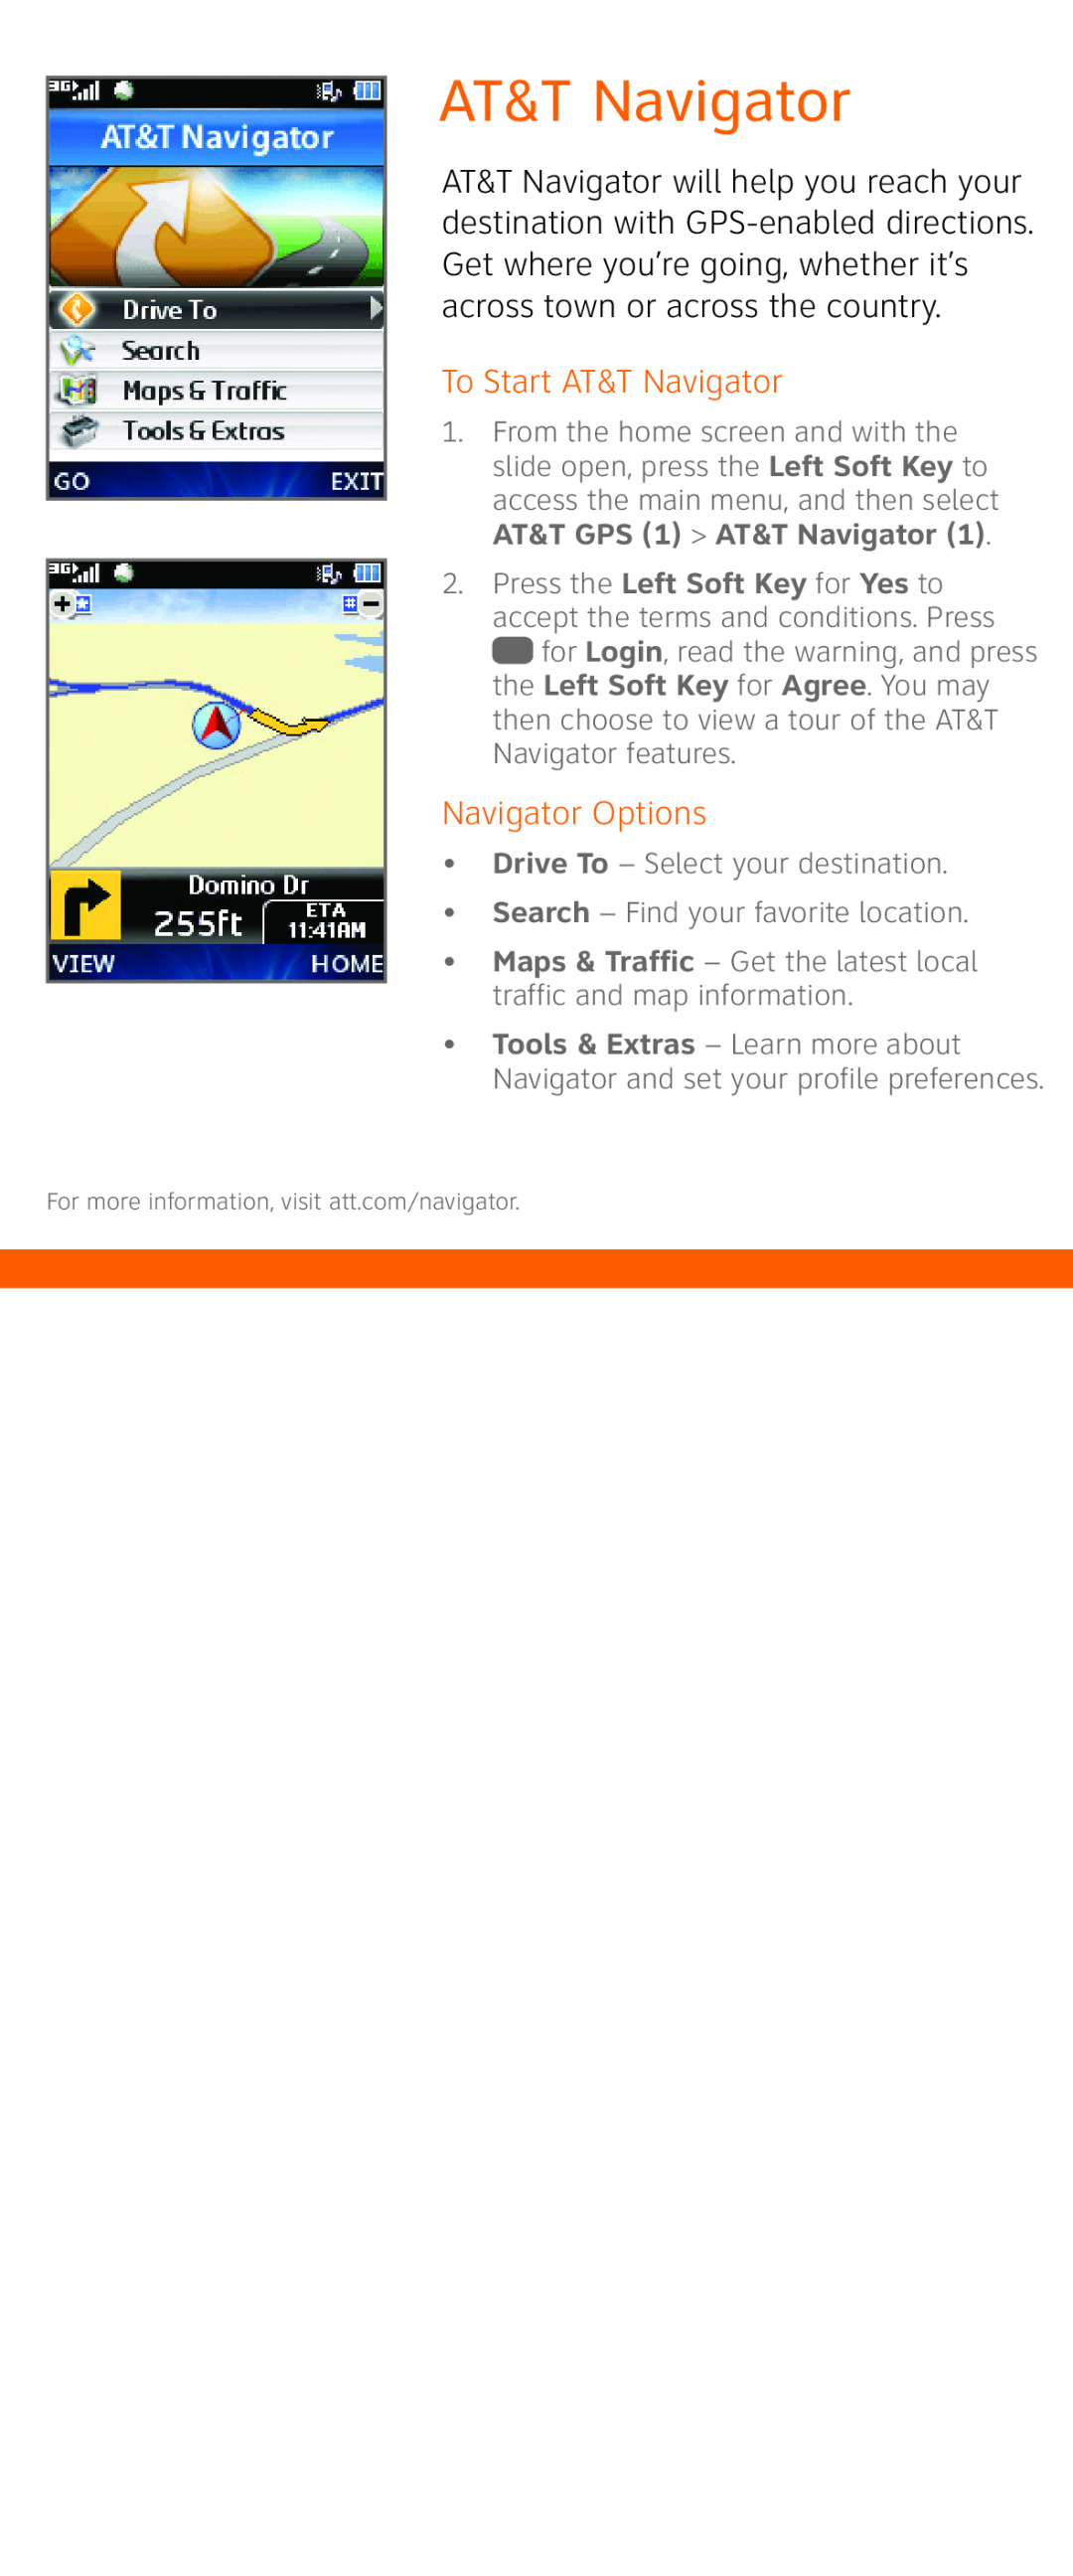 LG Electronics GU292 quick start To Start AT&T Navigator, Navigator Options, AT&T GPS 1 AT&T Navigator 